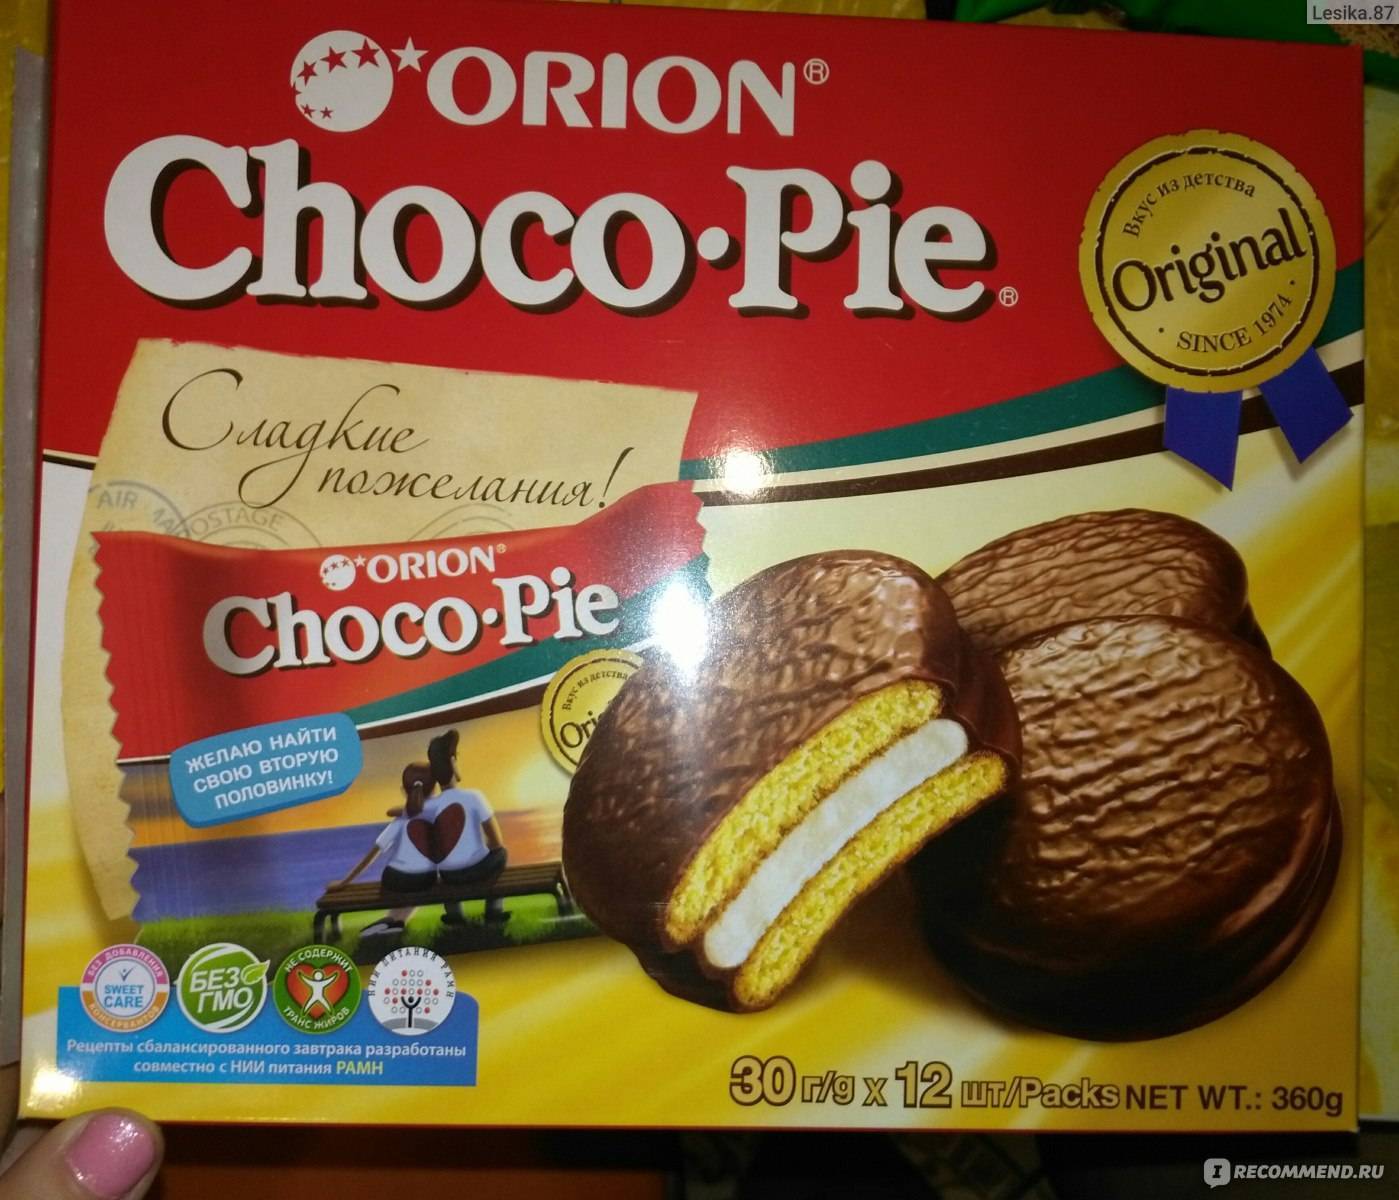 Всё тайное становится явным: секрет приготовления Choco Pie